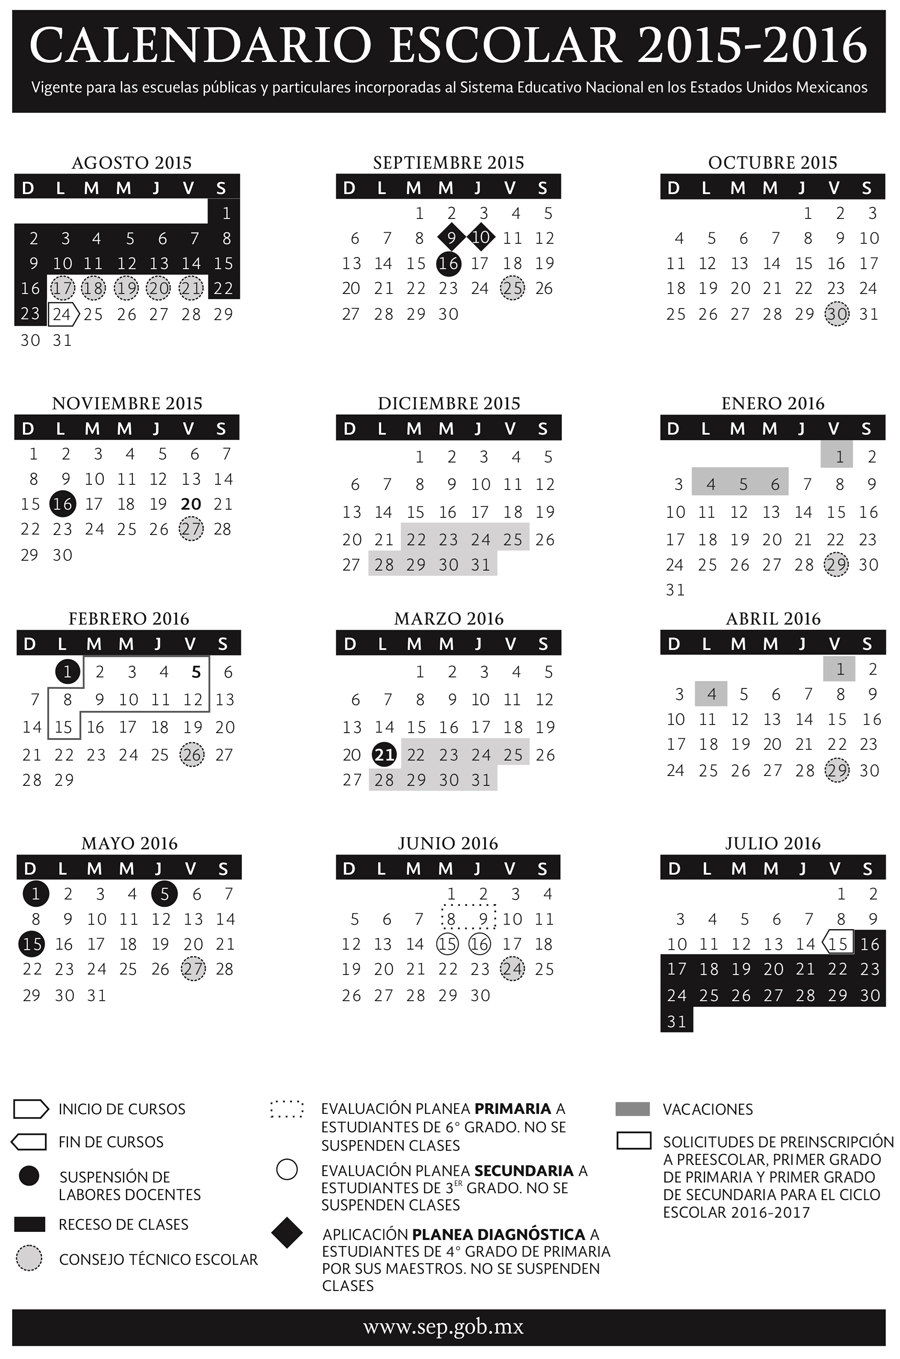 calendario-escolar-2015-2016-sep